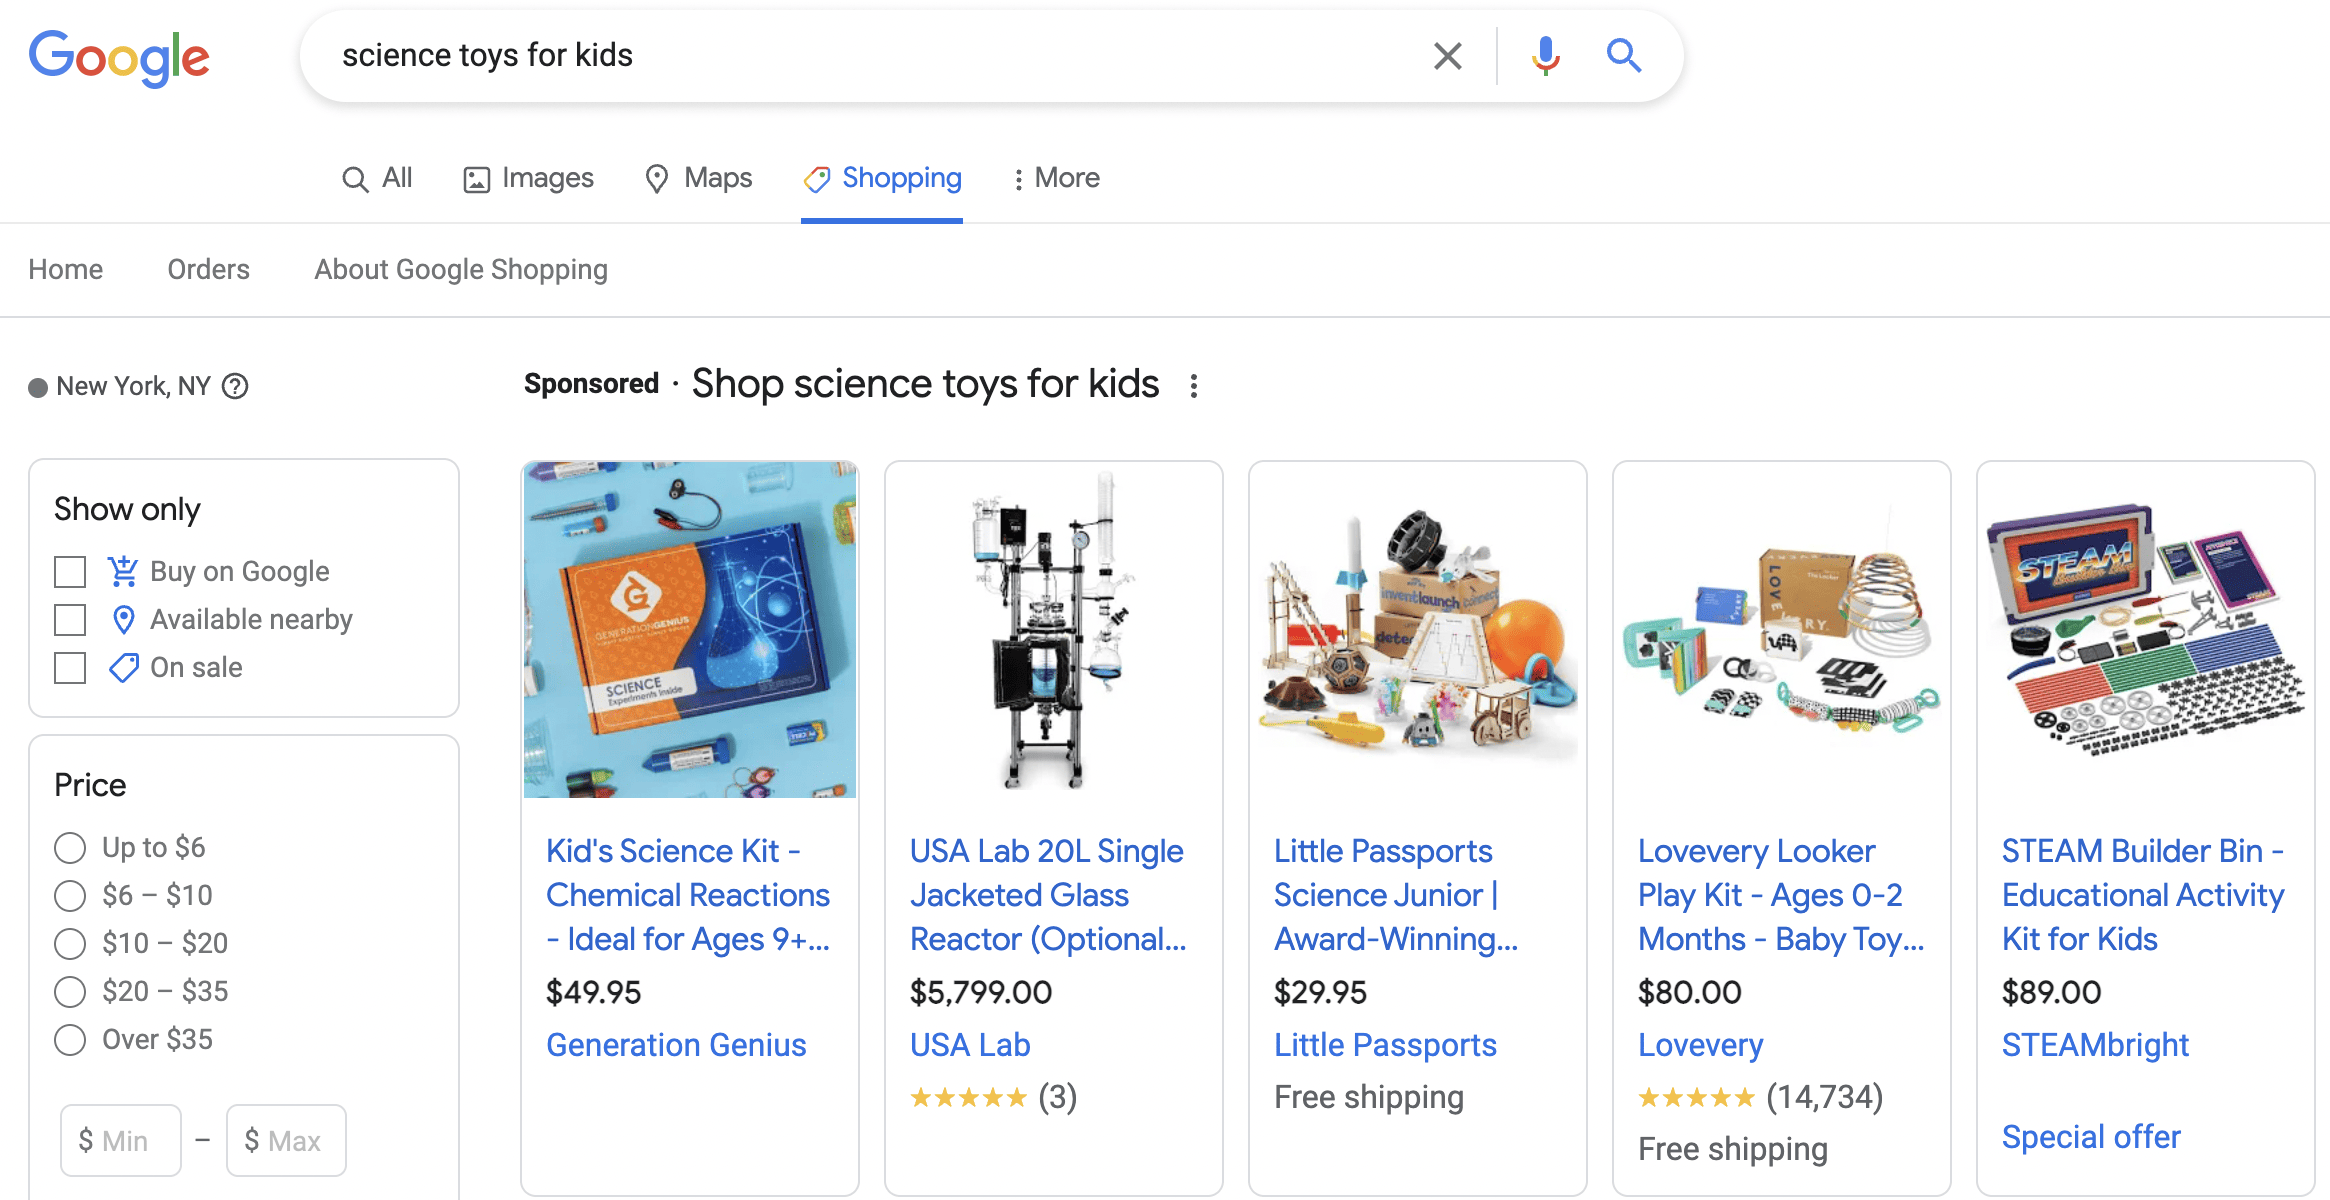 google alışveriş reklamları